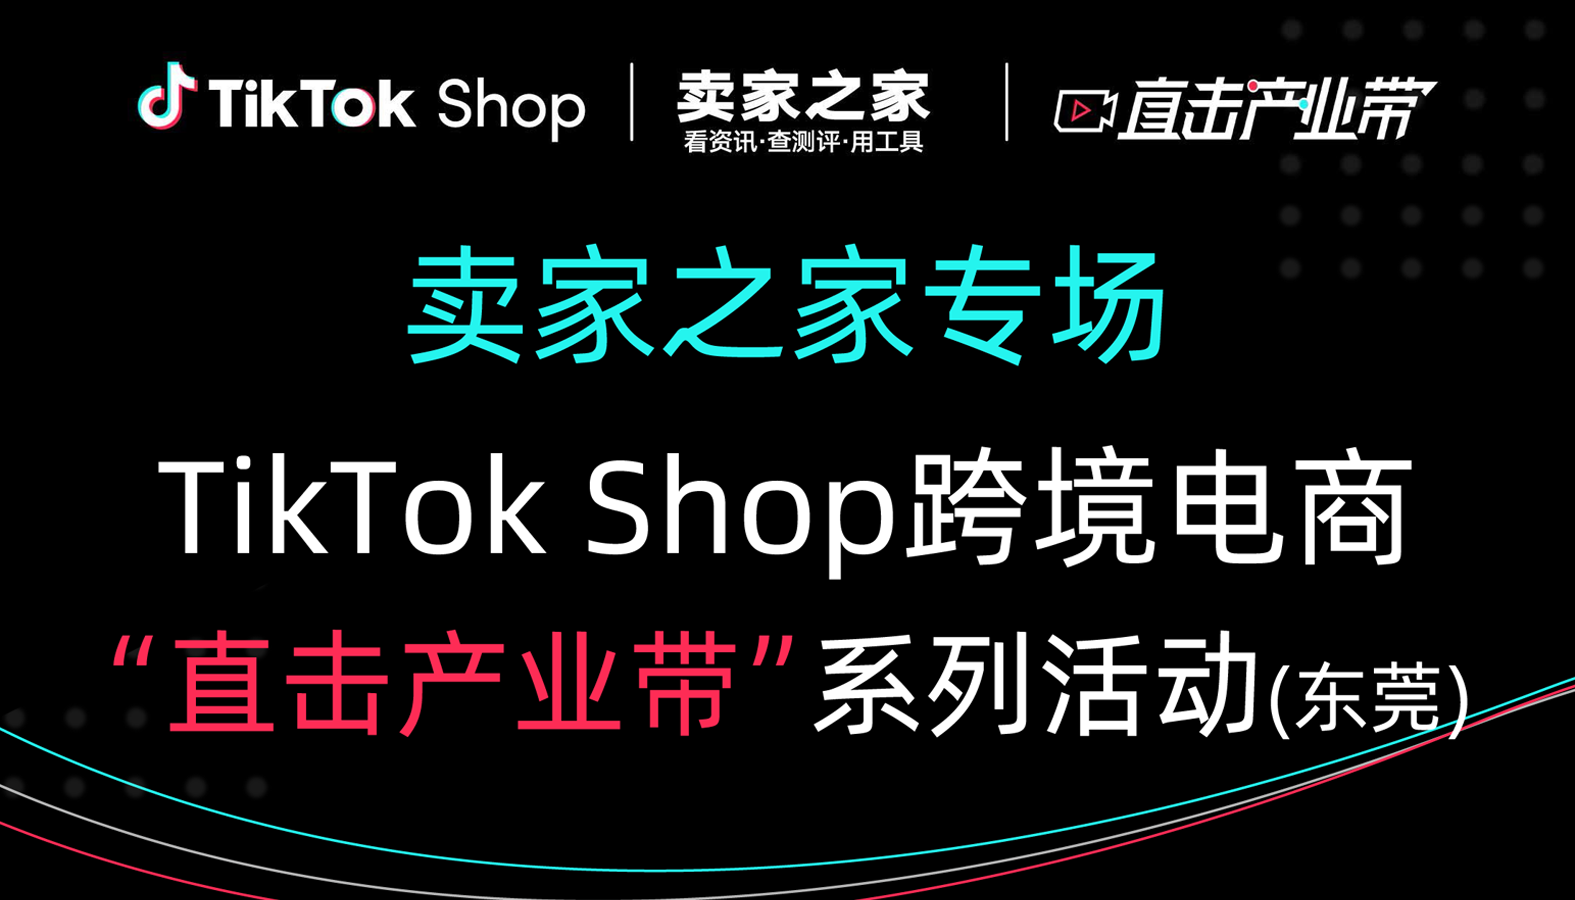 卖家之家TikTok Shop直击产业带主题沙龙（东莞）